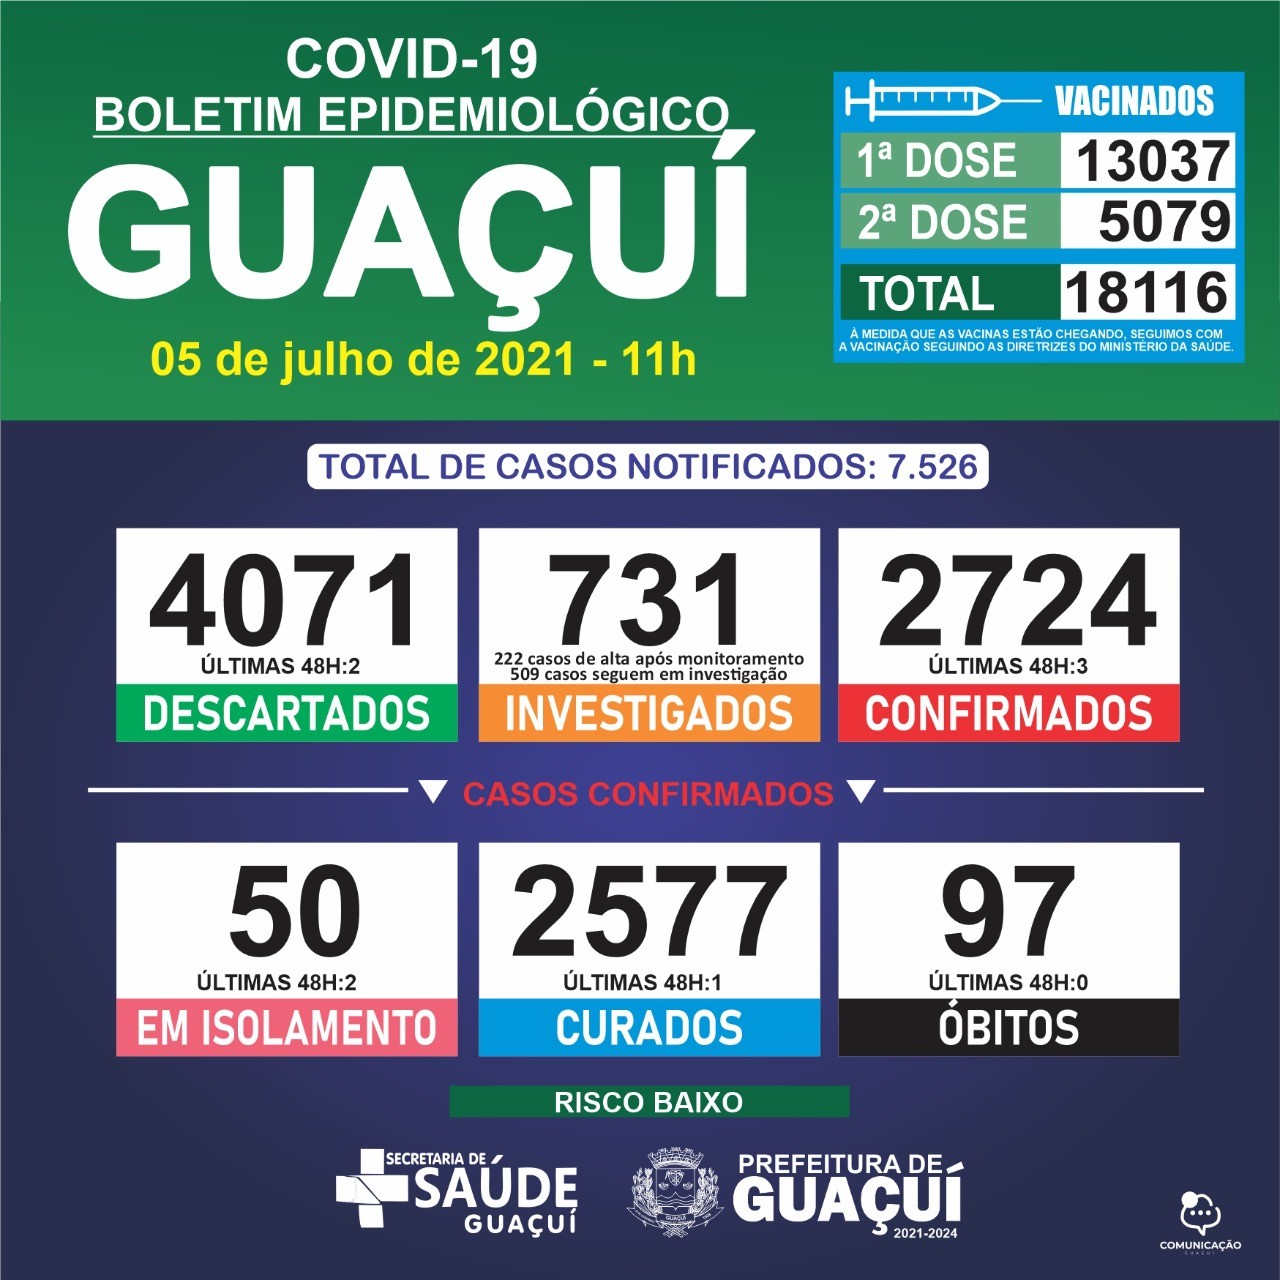 Boletim Epidemiológico 05/07/21: Guaçuí registra 3 casos confirmados e 1 curado nas últimas 24 horas